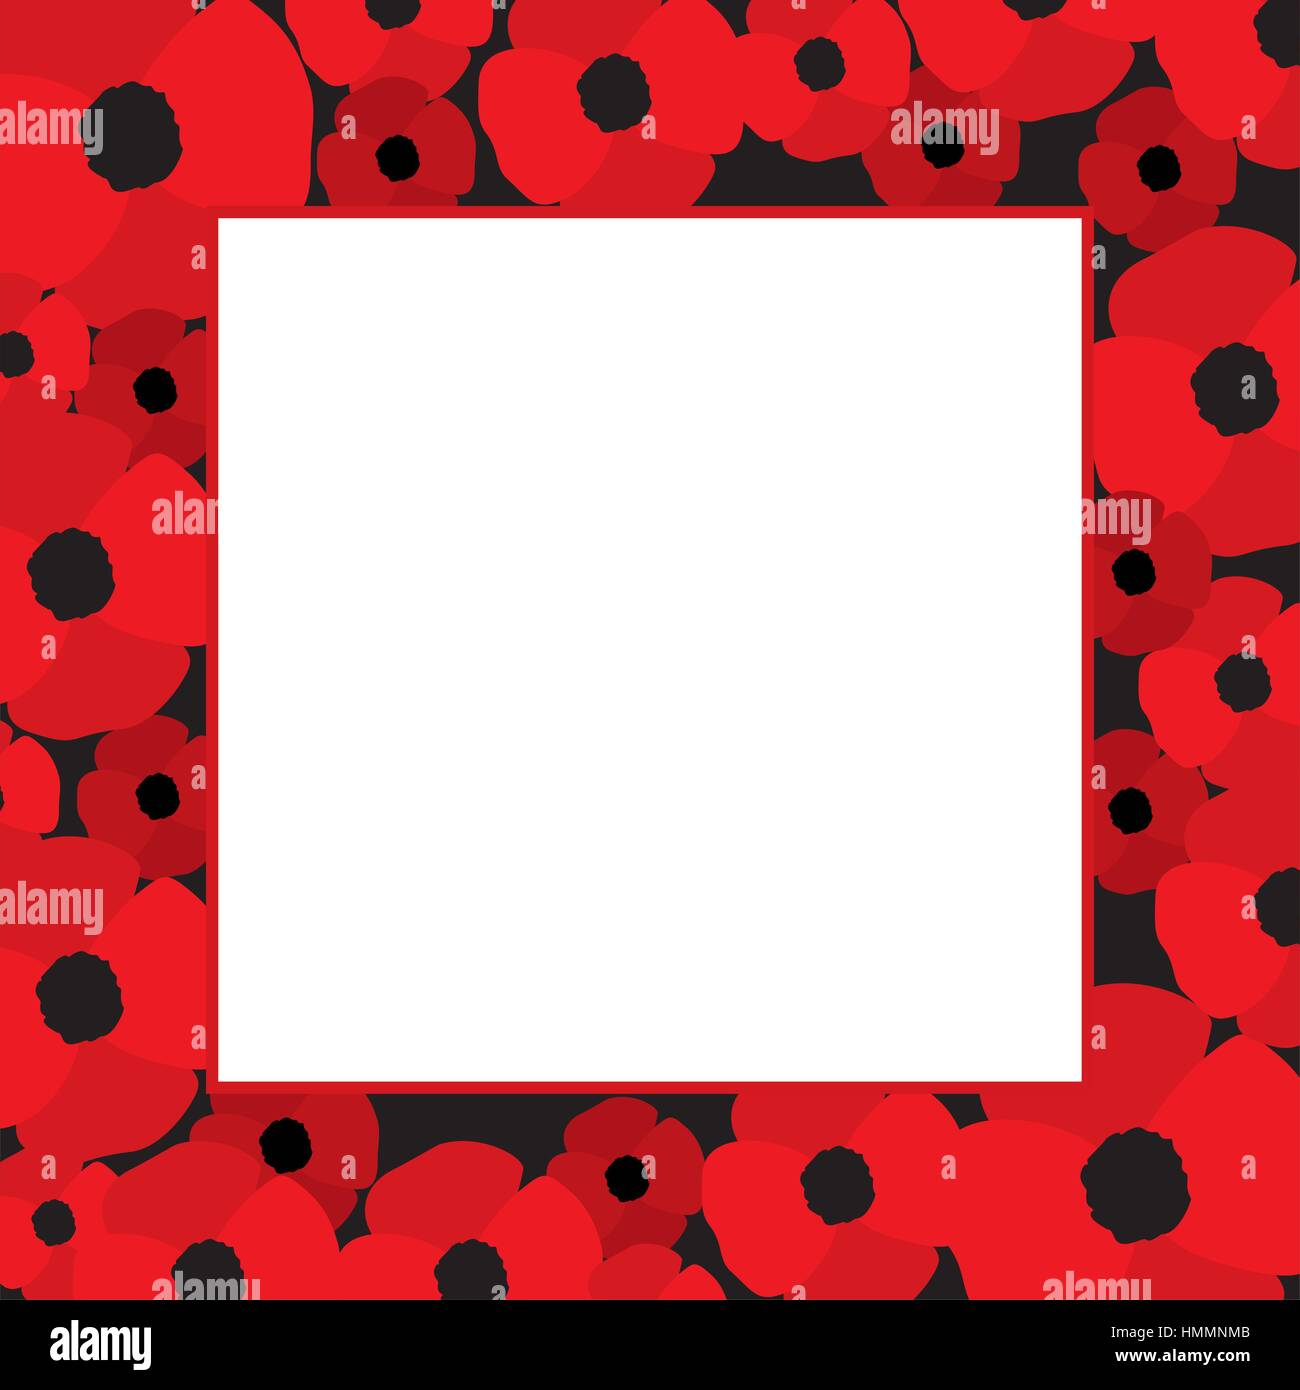 Vektor-Rahmen mit roten Mohnblumen auf Grenzen und weiße Leerzeichen in der Mitte. Mohnblume-Hintergrund. Vorlage für Postkartendesign. Vektor-illustrati Stock Vektor